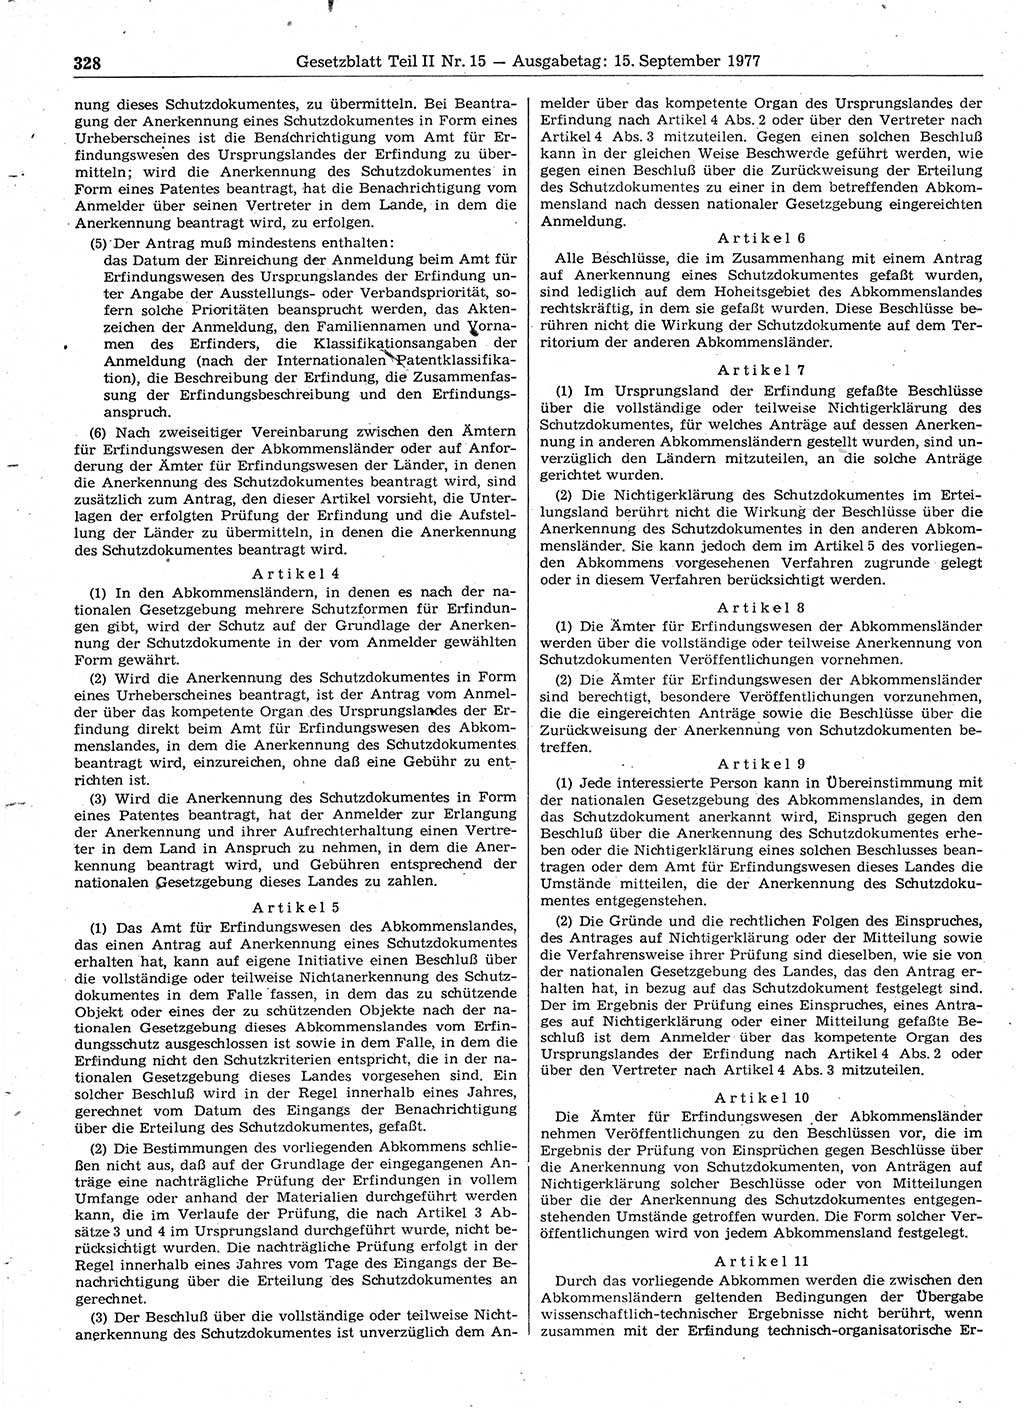 Gesetzblatt (GBl.) der Deutschen Demokratischen Republik (DDR) Teil ⅠⅠ 1977, Seite 328 (GBl. DDR ⅠⅠ 1977, S. 328)